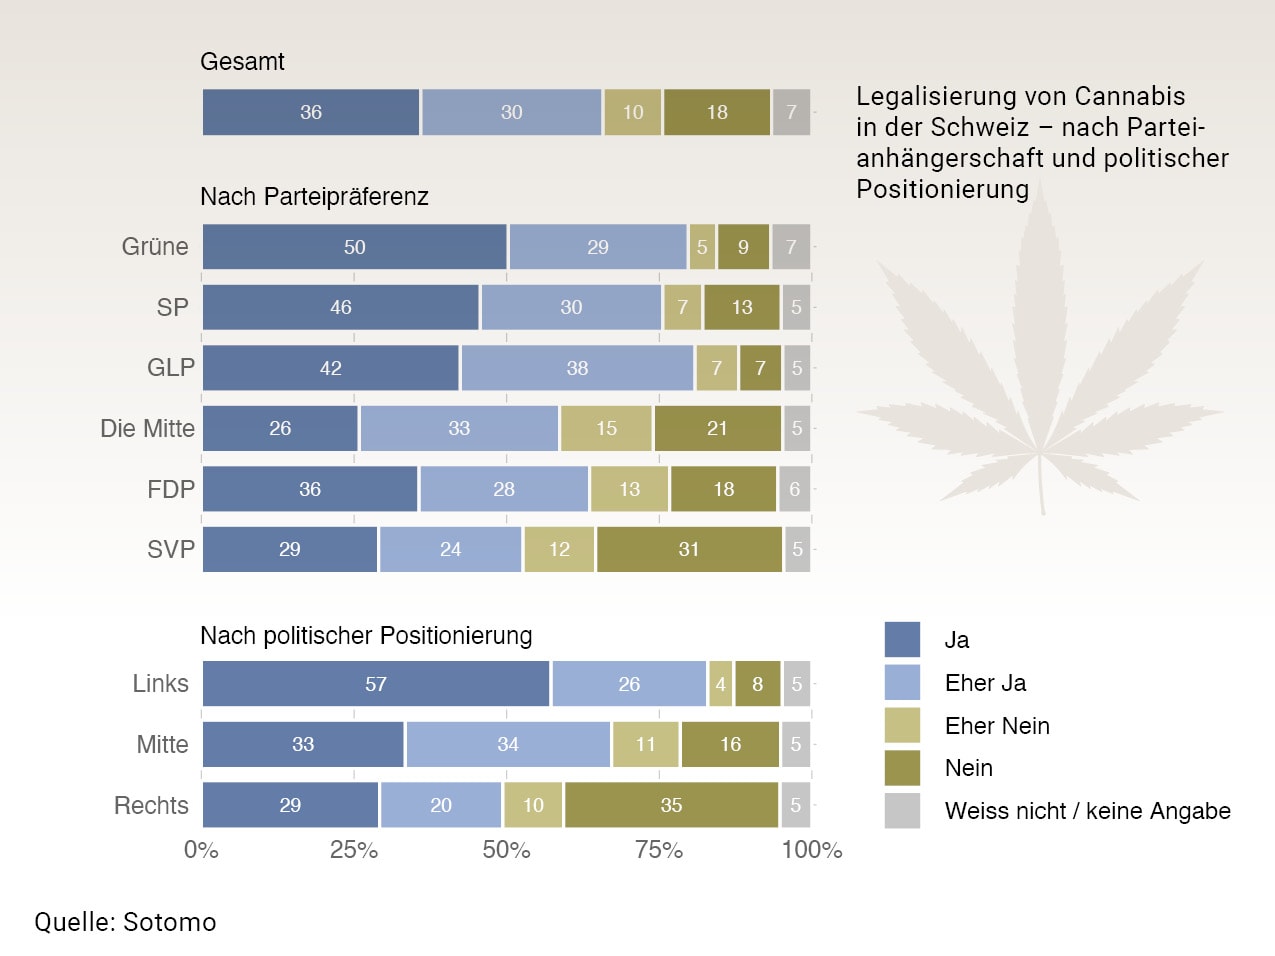 Legalisierung von Cannabis in der Schweiz – nach Parteianhängerschaft und politischer Positionierung